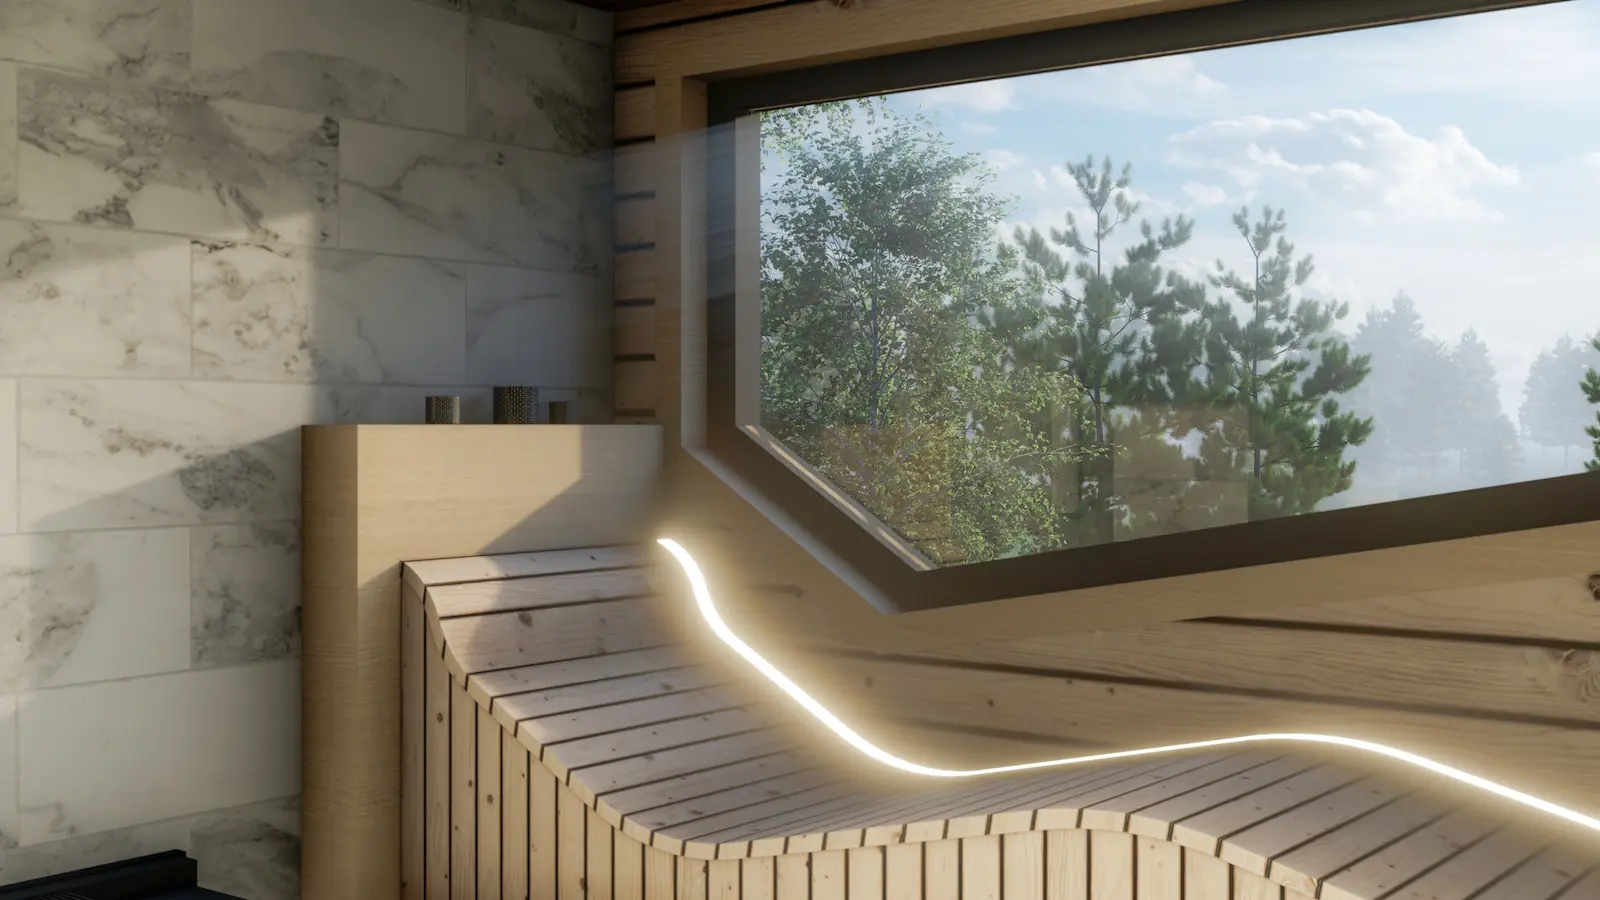 Anatominiai pirties gultai su panoraminiais langais | Asauna